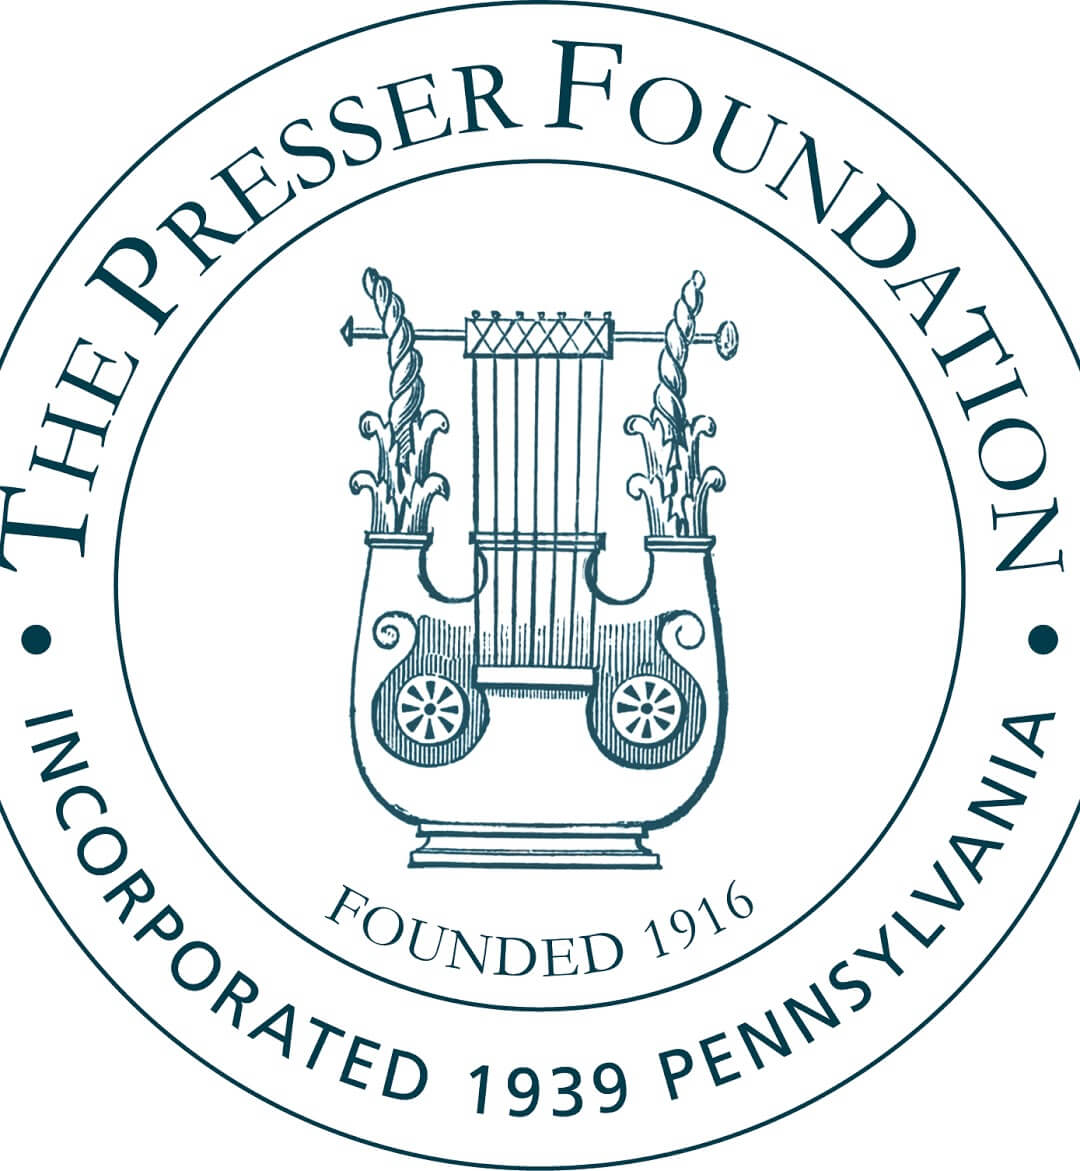 Presser Foundation